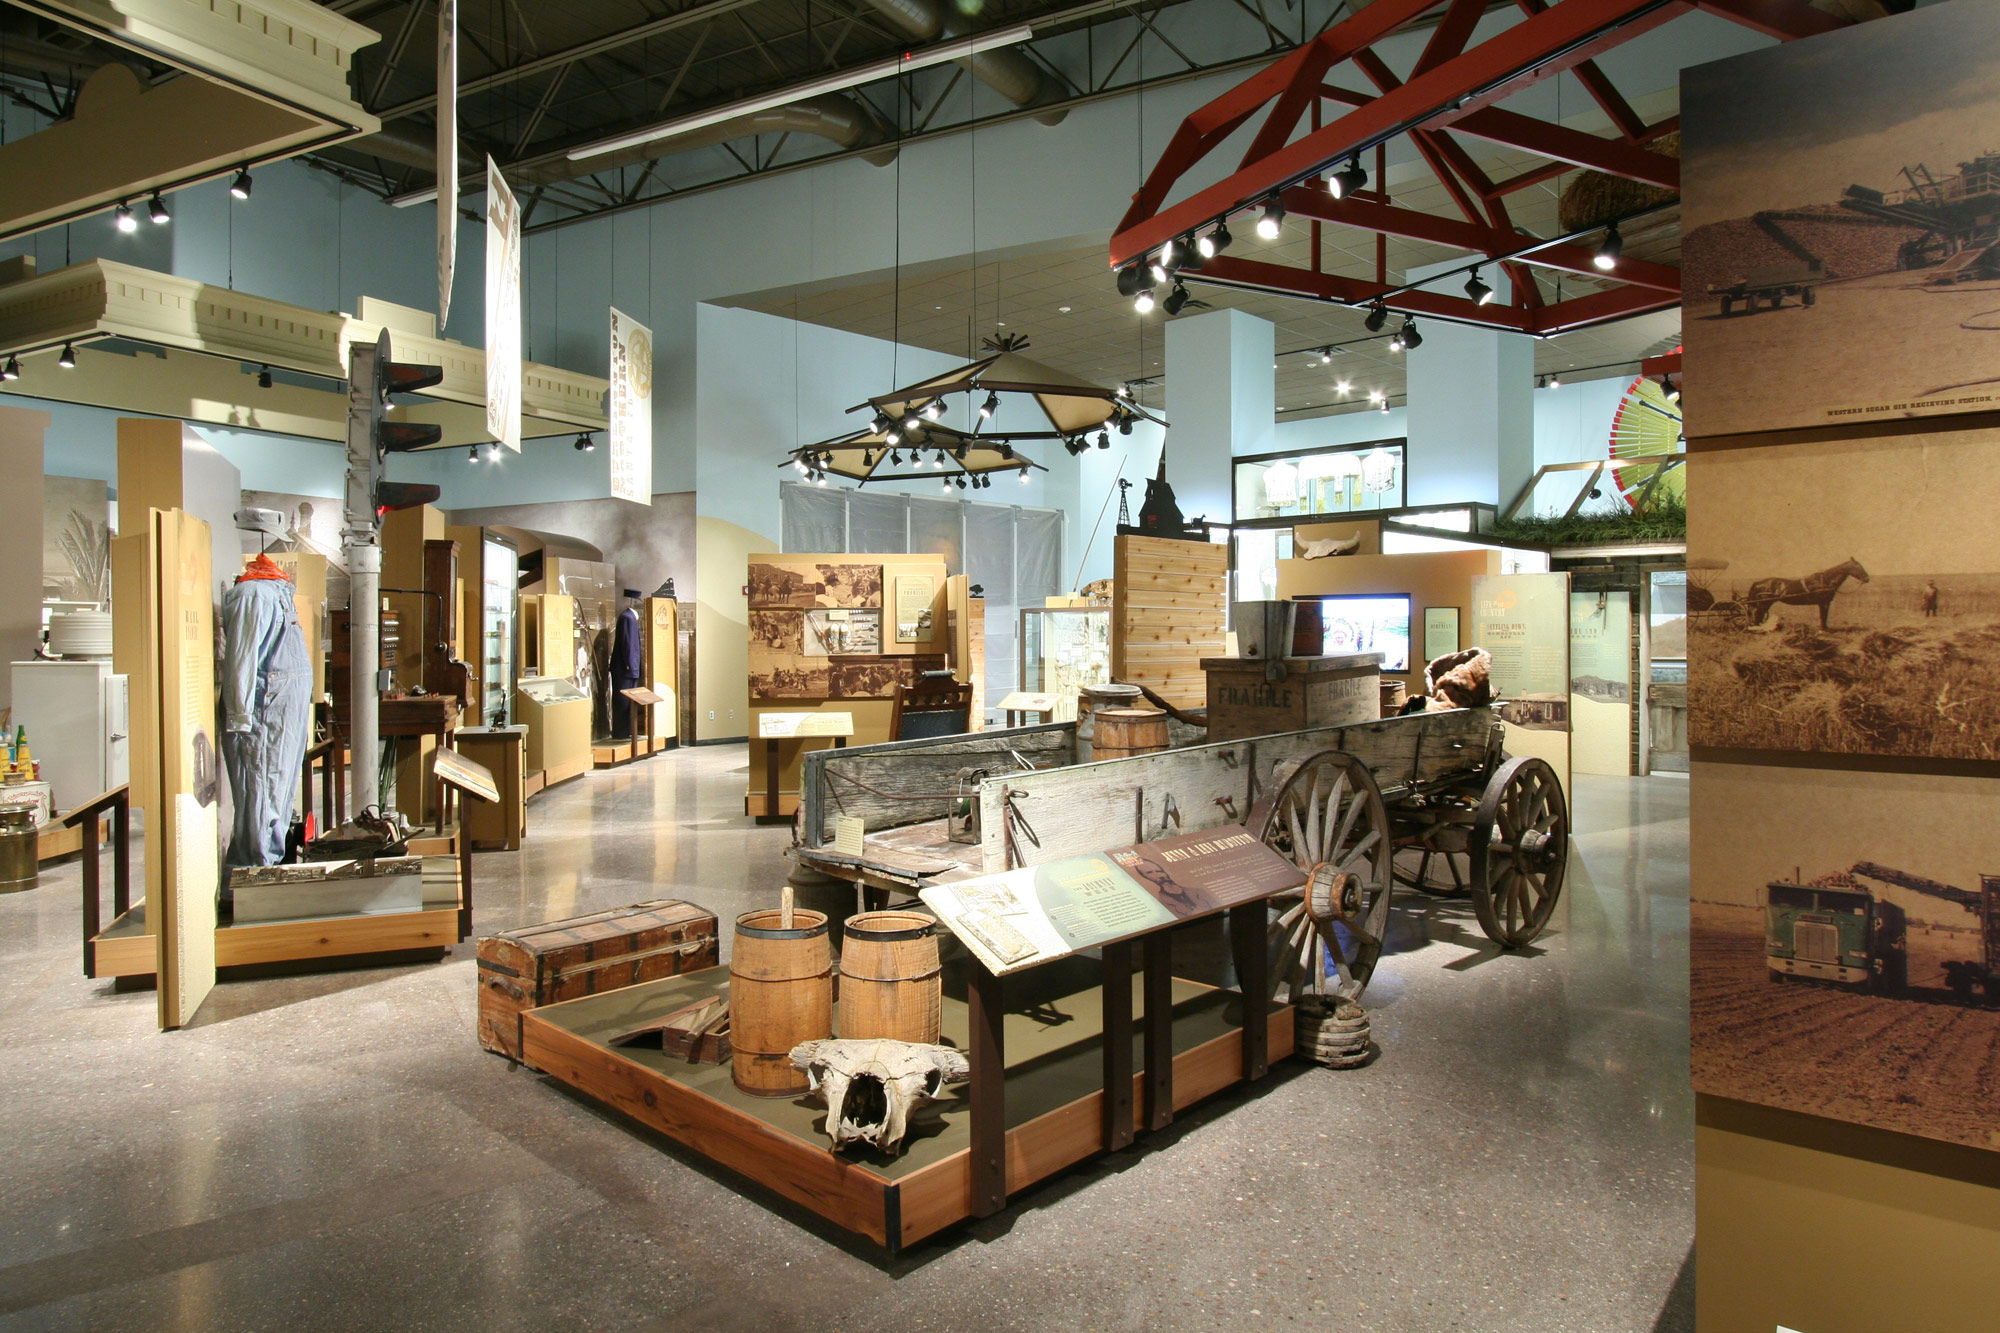 Knight Museum and Sandhills Center interior